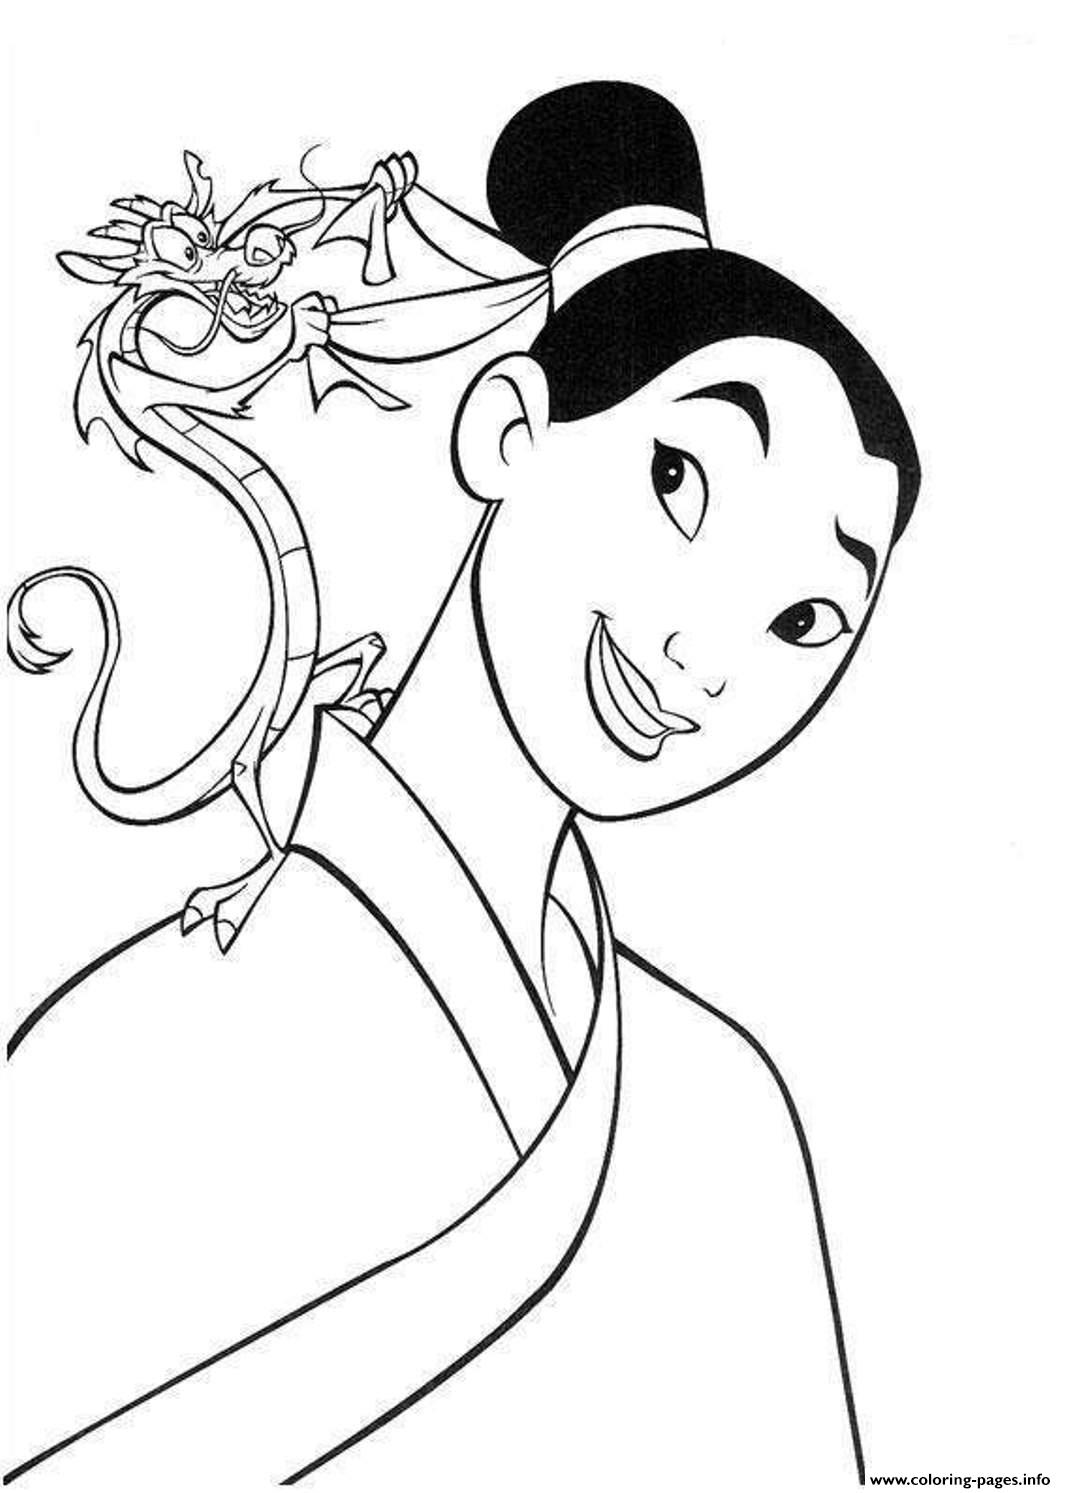 Princess Mulan S364f coloring